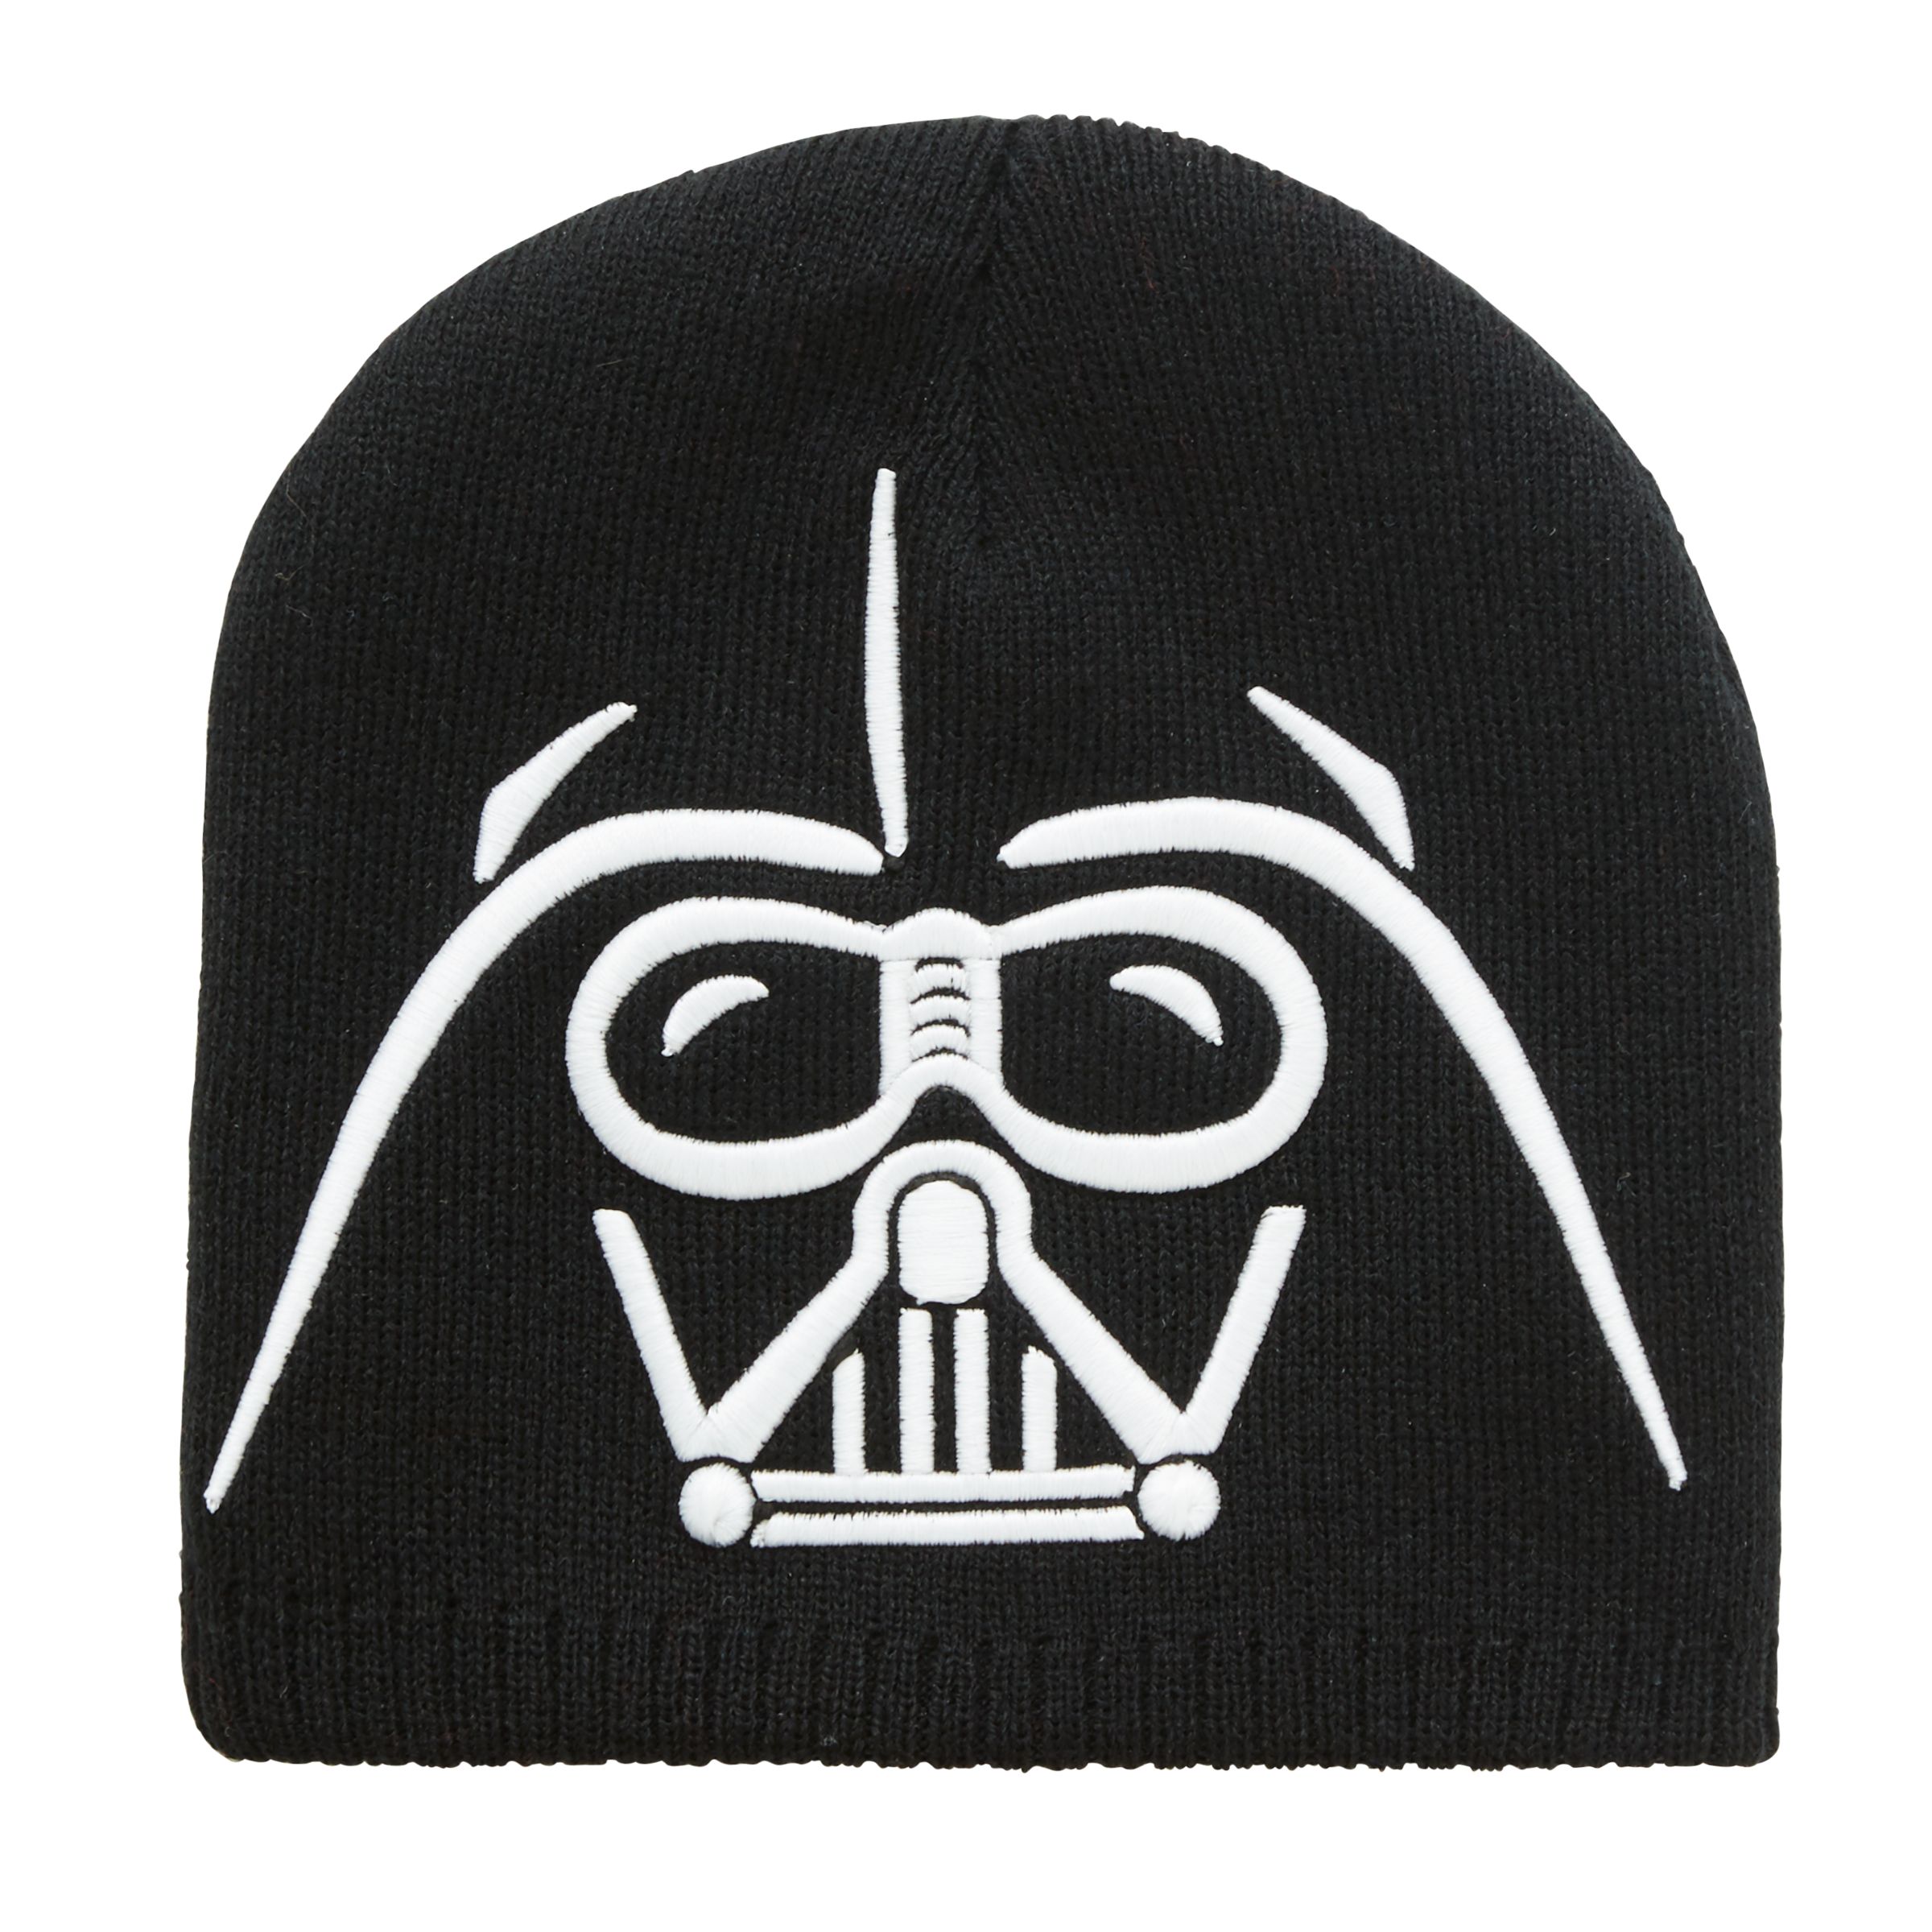 Star Wars Children's Darth Vader Beanie Hat, Black/White, 6-8 years